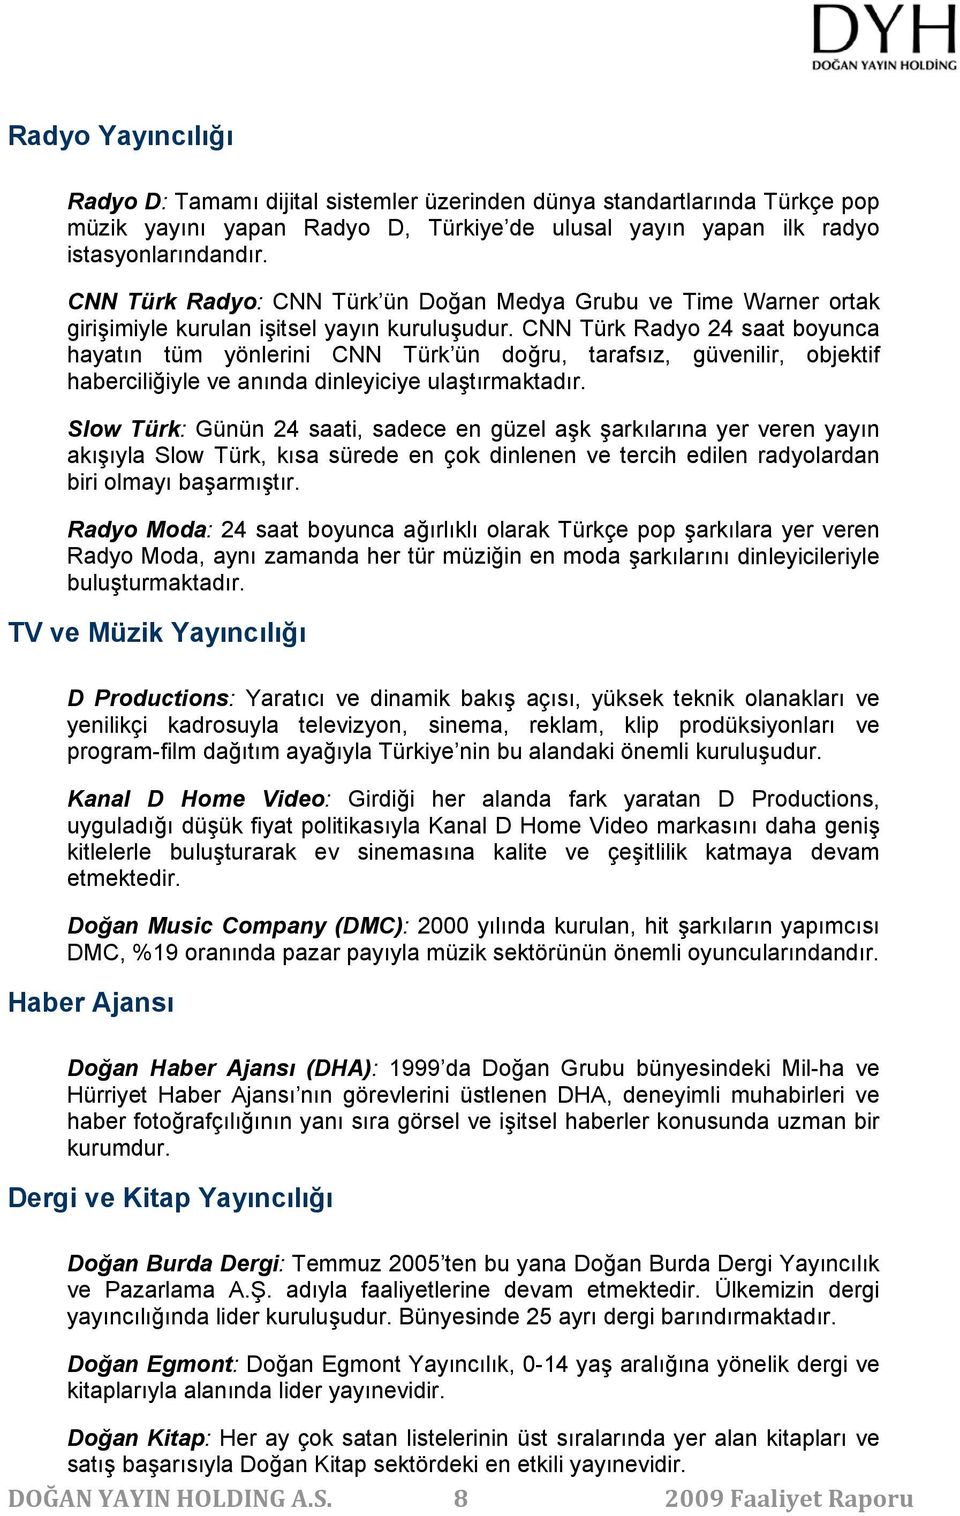 CNN Türk Radyo 24 saat boyunca hayatın tüm yönlerini CNN Türk ün doğru, tarafsız, güvenilir, objektif haberciliğiyle ve anında dinleyiciye ulaştırmaktadır.